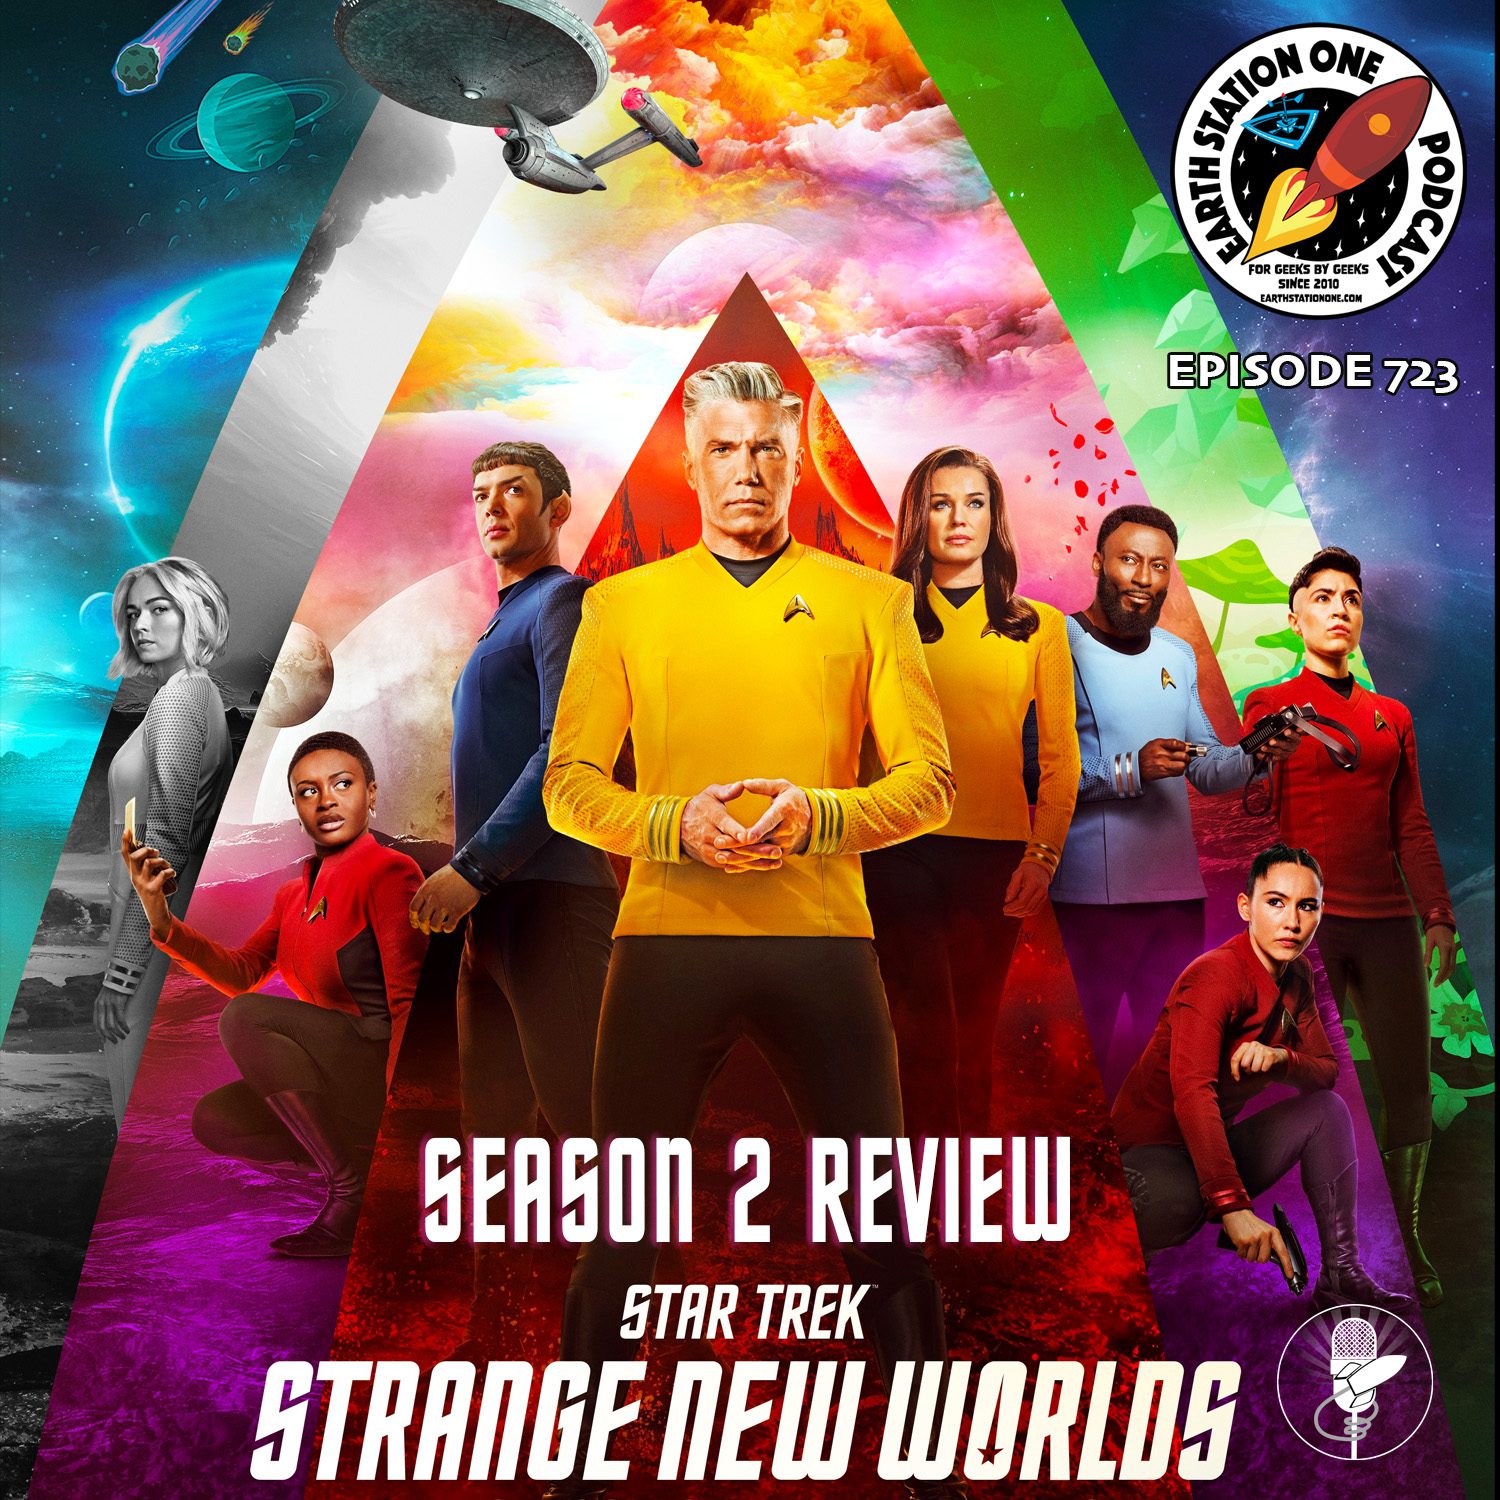 Earth Station One Ep 723 - Star Trek: Strange New World Season 2